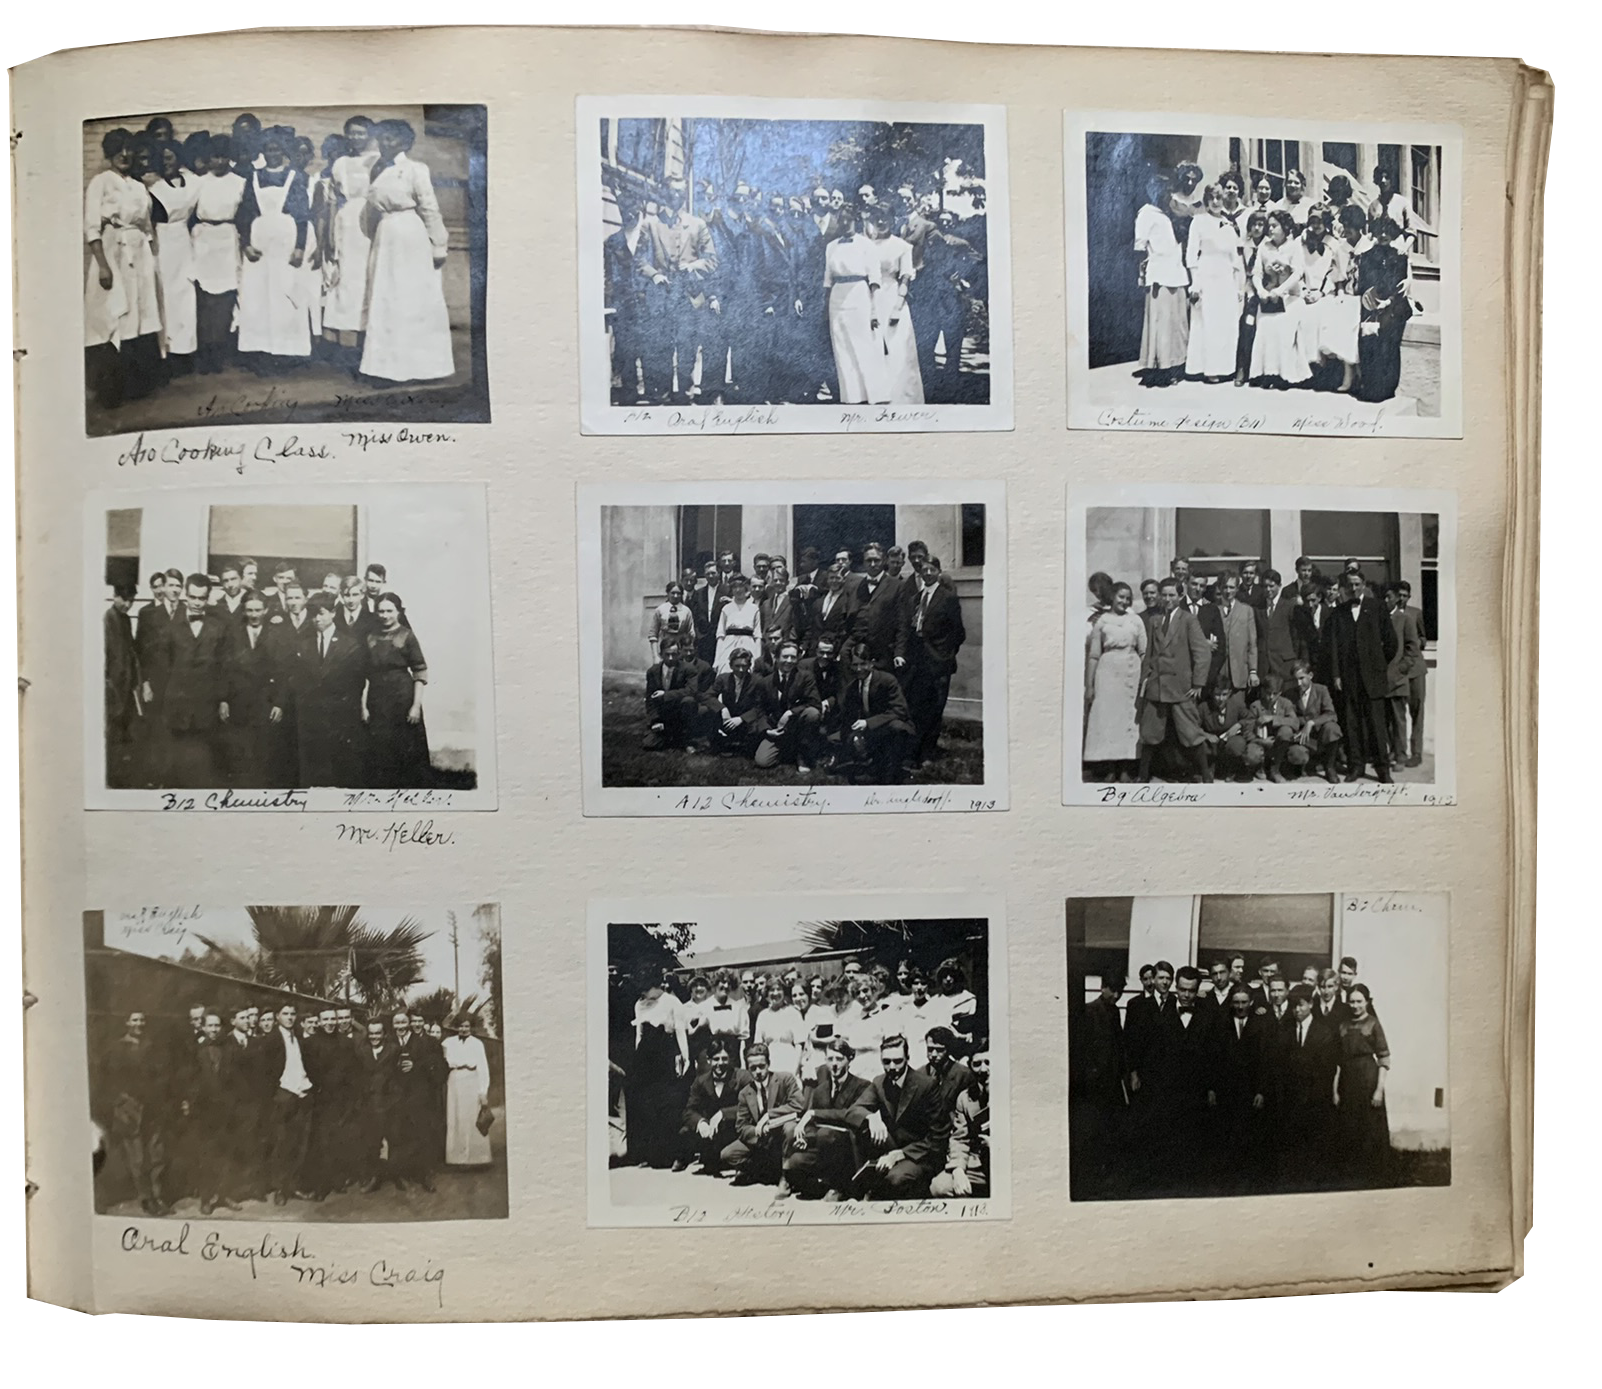 1915-WELLS-vida bula-poly high school scrapbook (8)a